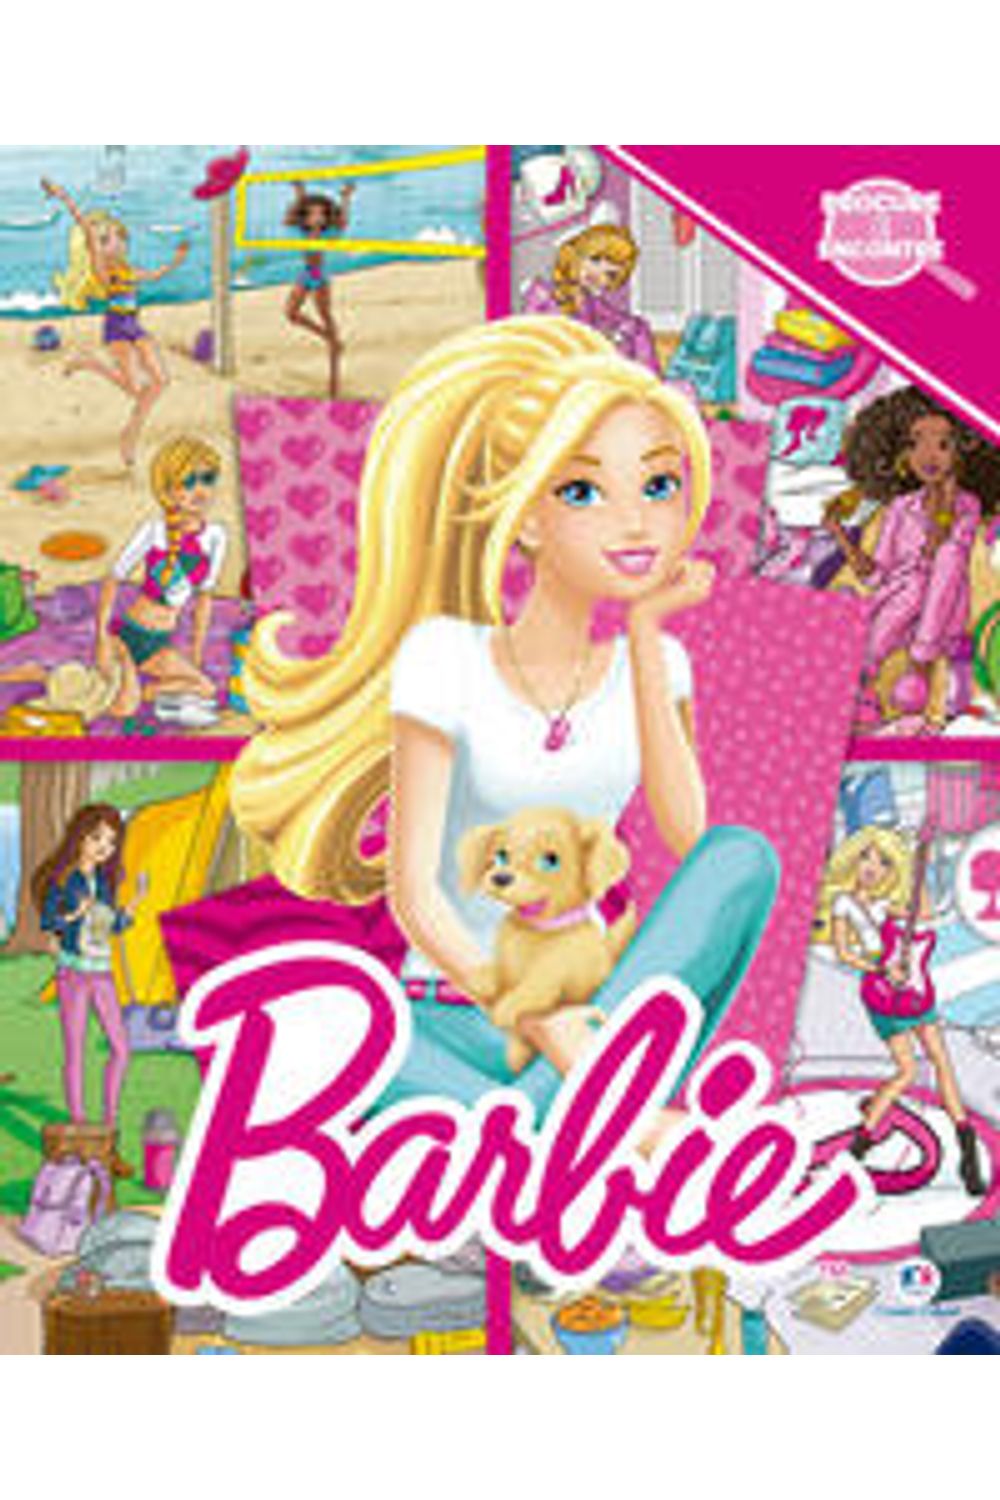 Retorno ao mundo da Barbie é necessário para resgatar alegria